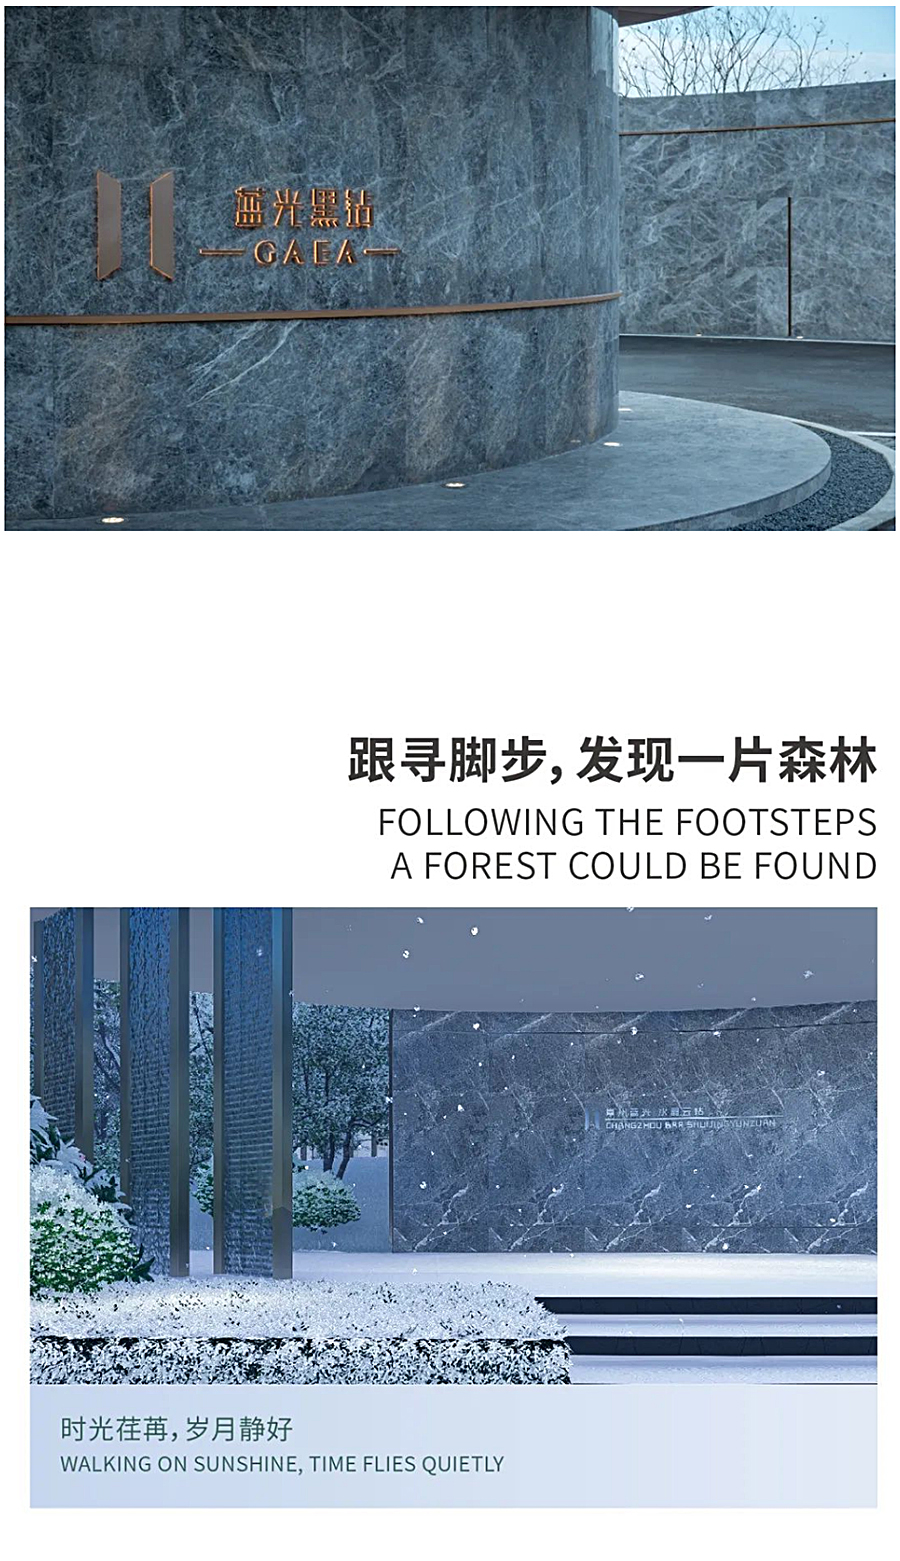 城市森林寻宝之旅-_-常州蓝光黑钻_0005_图层-6 拷贝.jpg